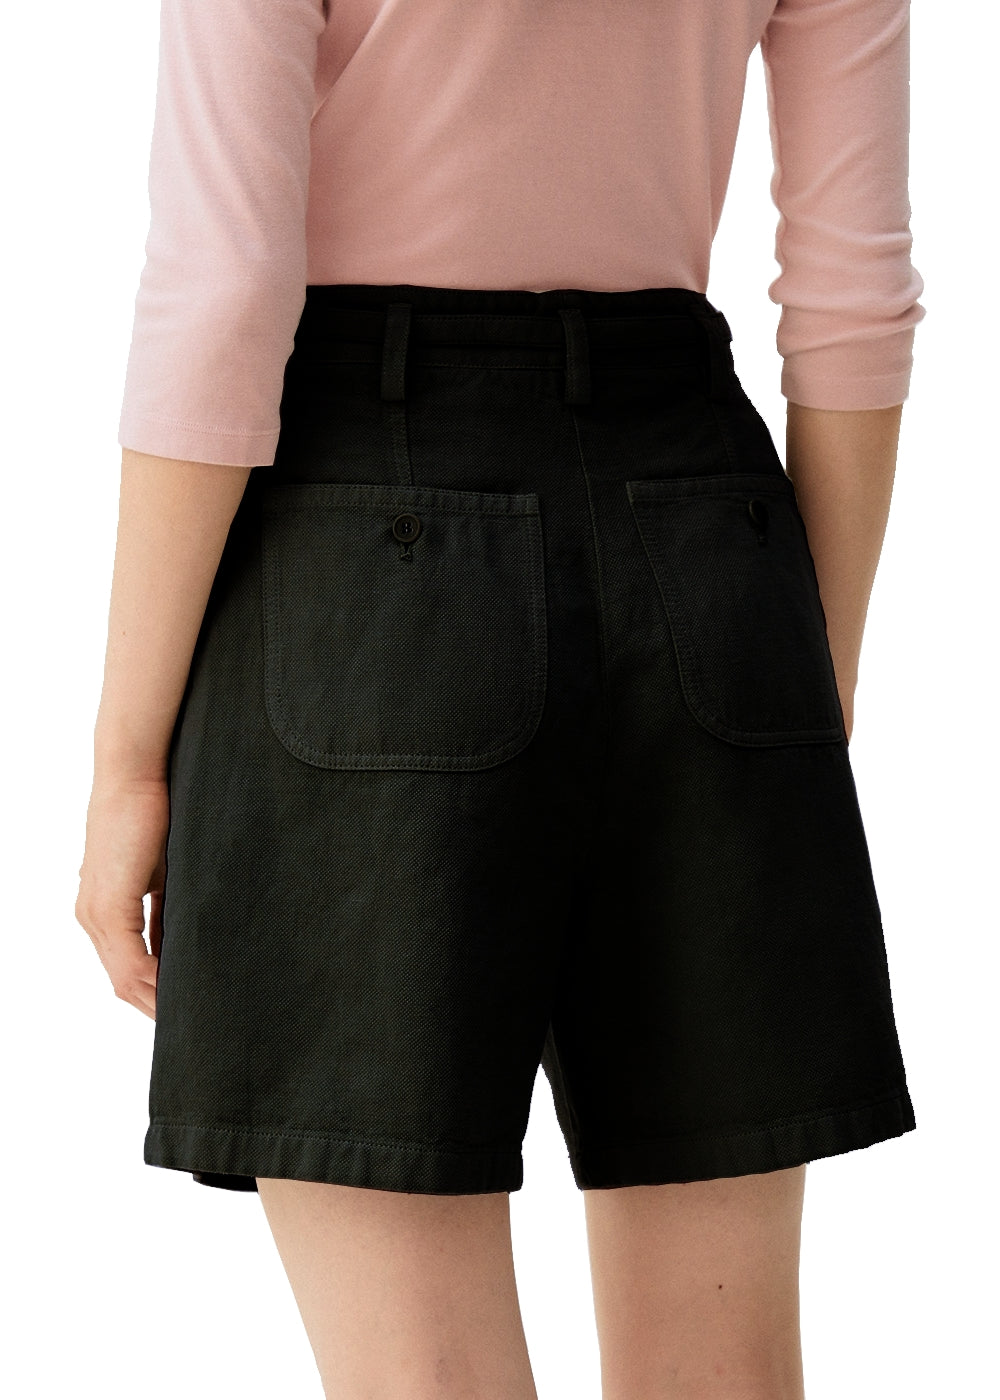 Rosso35 Shorts in edlem schwarz. Bermuda Hose in luftiger Baumwolle Leinen Qualität von Rosso35 online kaufen. Gepflegte Damen Shorts mit Bundfalte und Bindegürtel aus der neuen Rosso35 Kollektion.